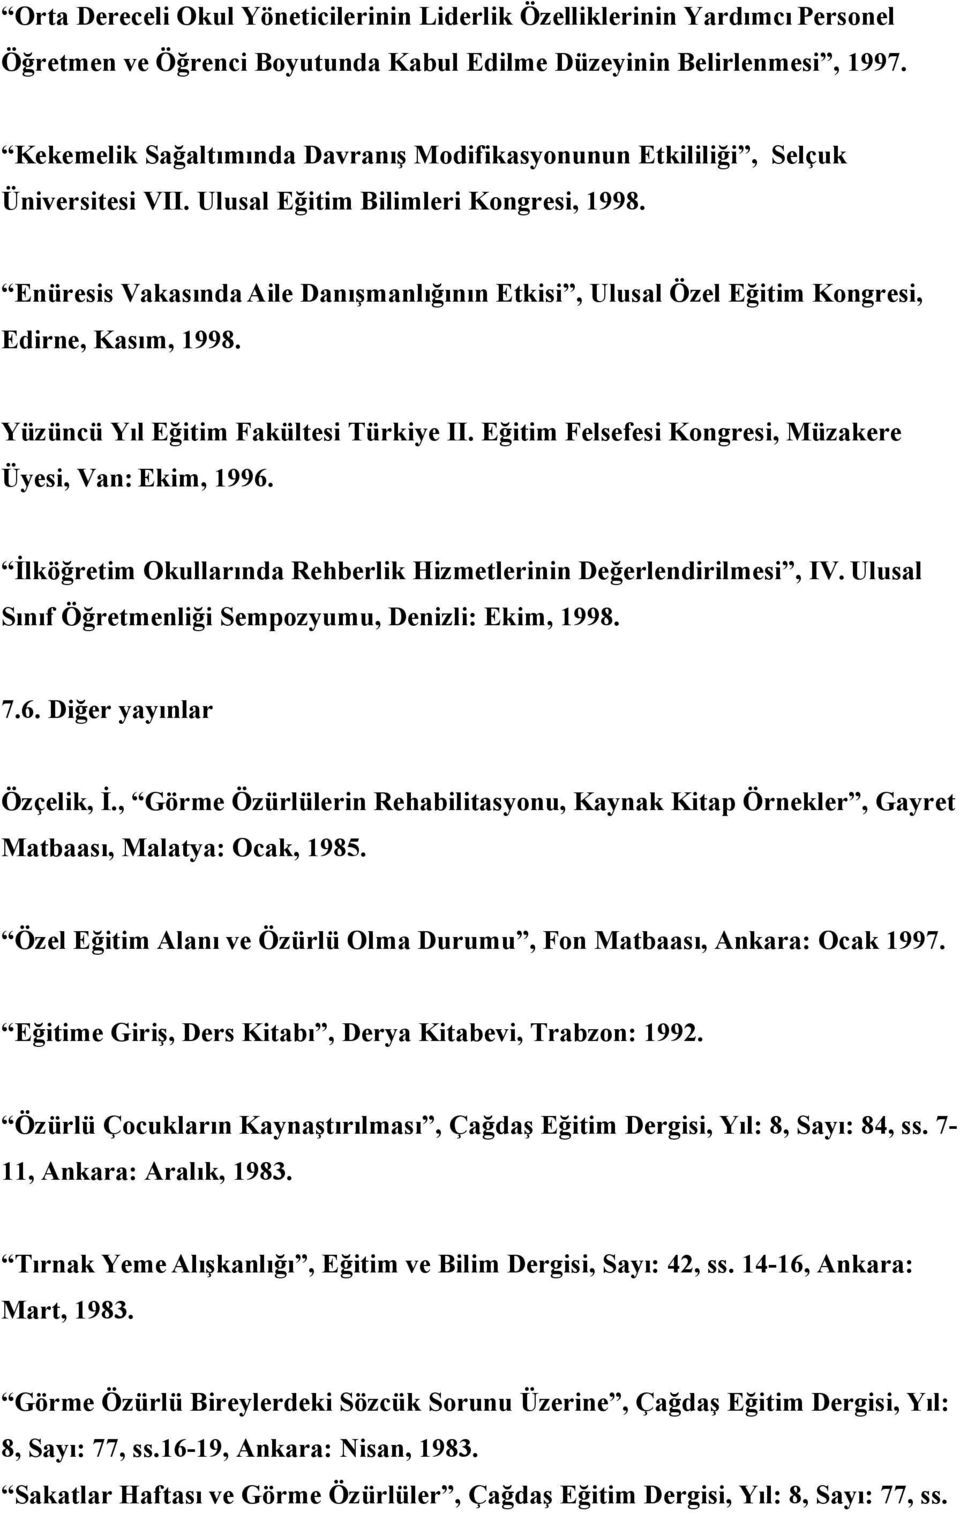 Enüresis Vakasında Aile Danışmanlığının Etkisi, Ulusal Özel Eğitim Kongresi, Edirne, Kasım, 1998. Yüzüncü Yıl Eğitim Fakültesi Türkiye II. Eğitim Felsefesi Kongresi, Müzakere Üyesi, Van: Ekim, 1996.